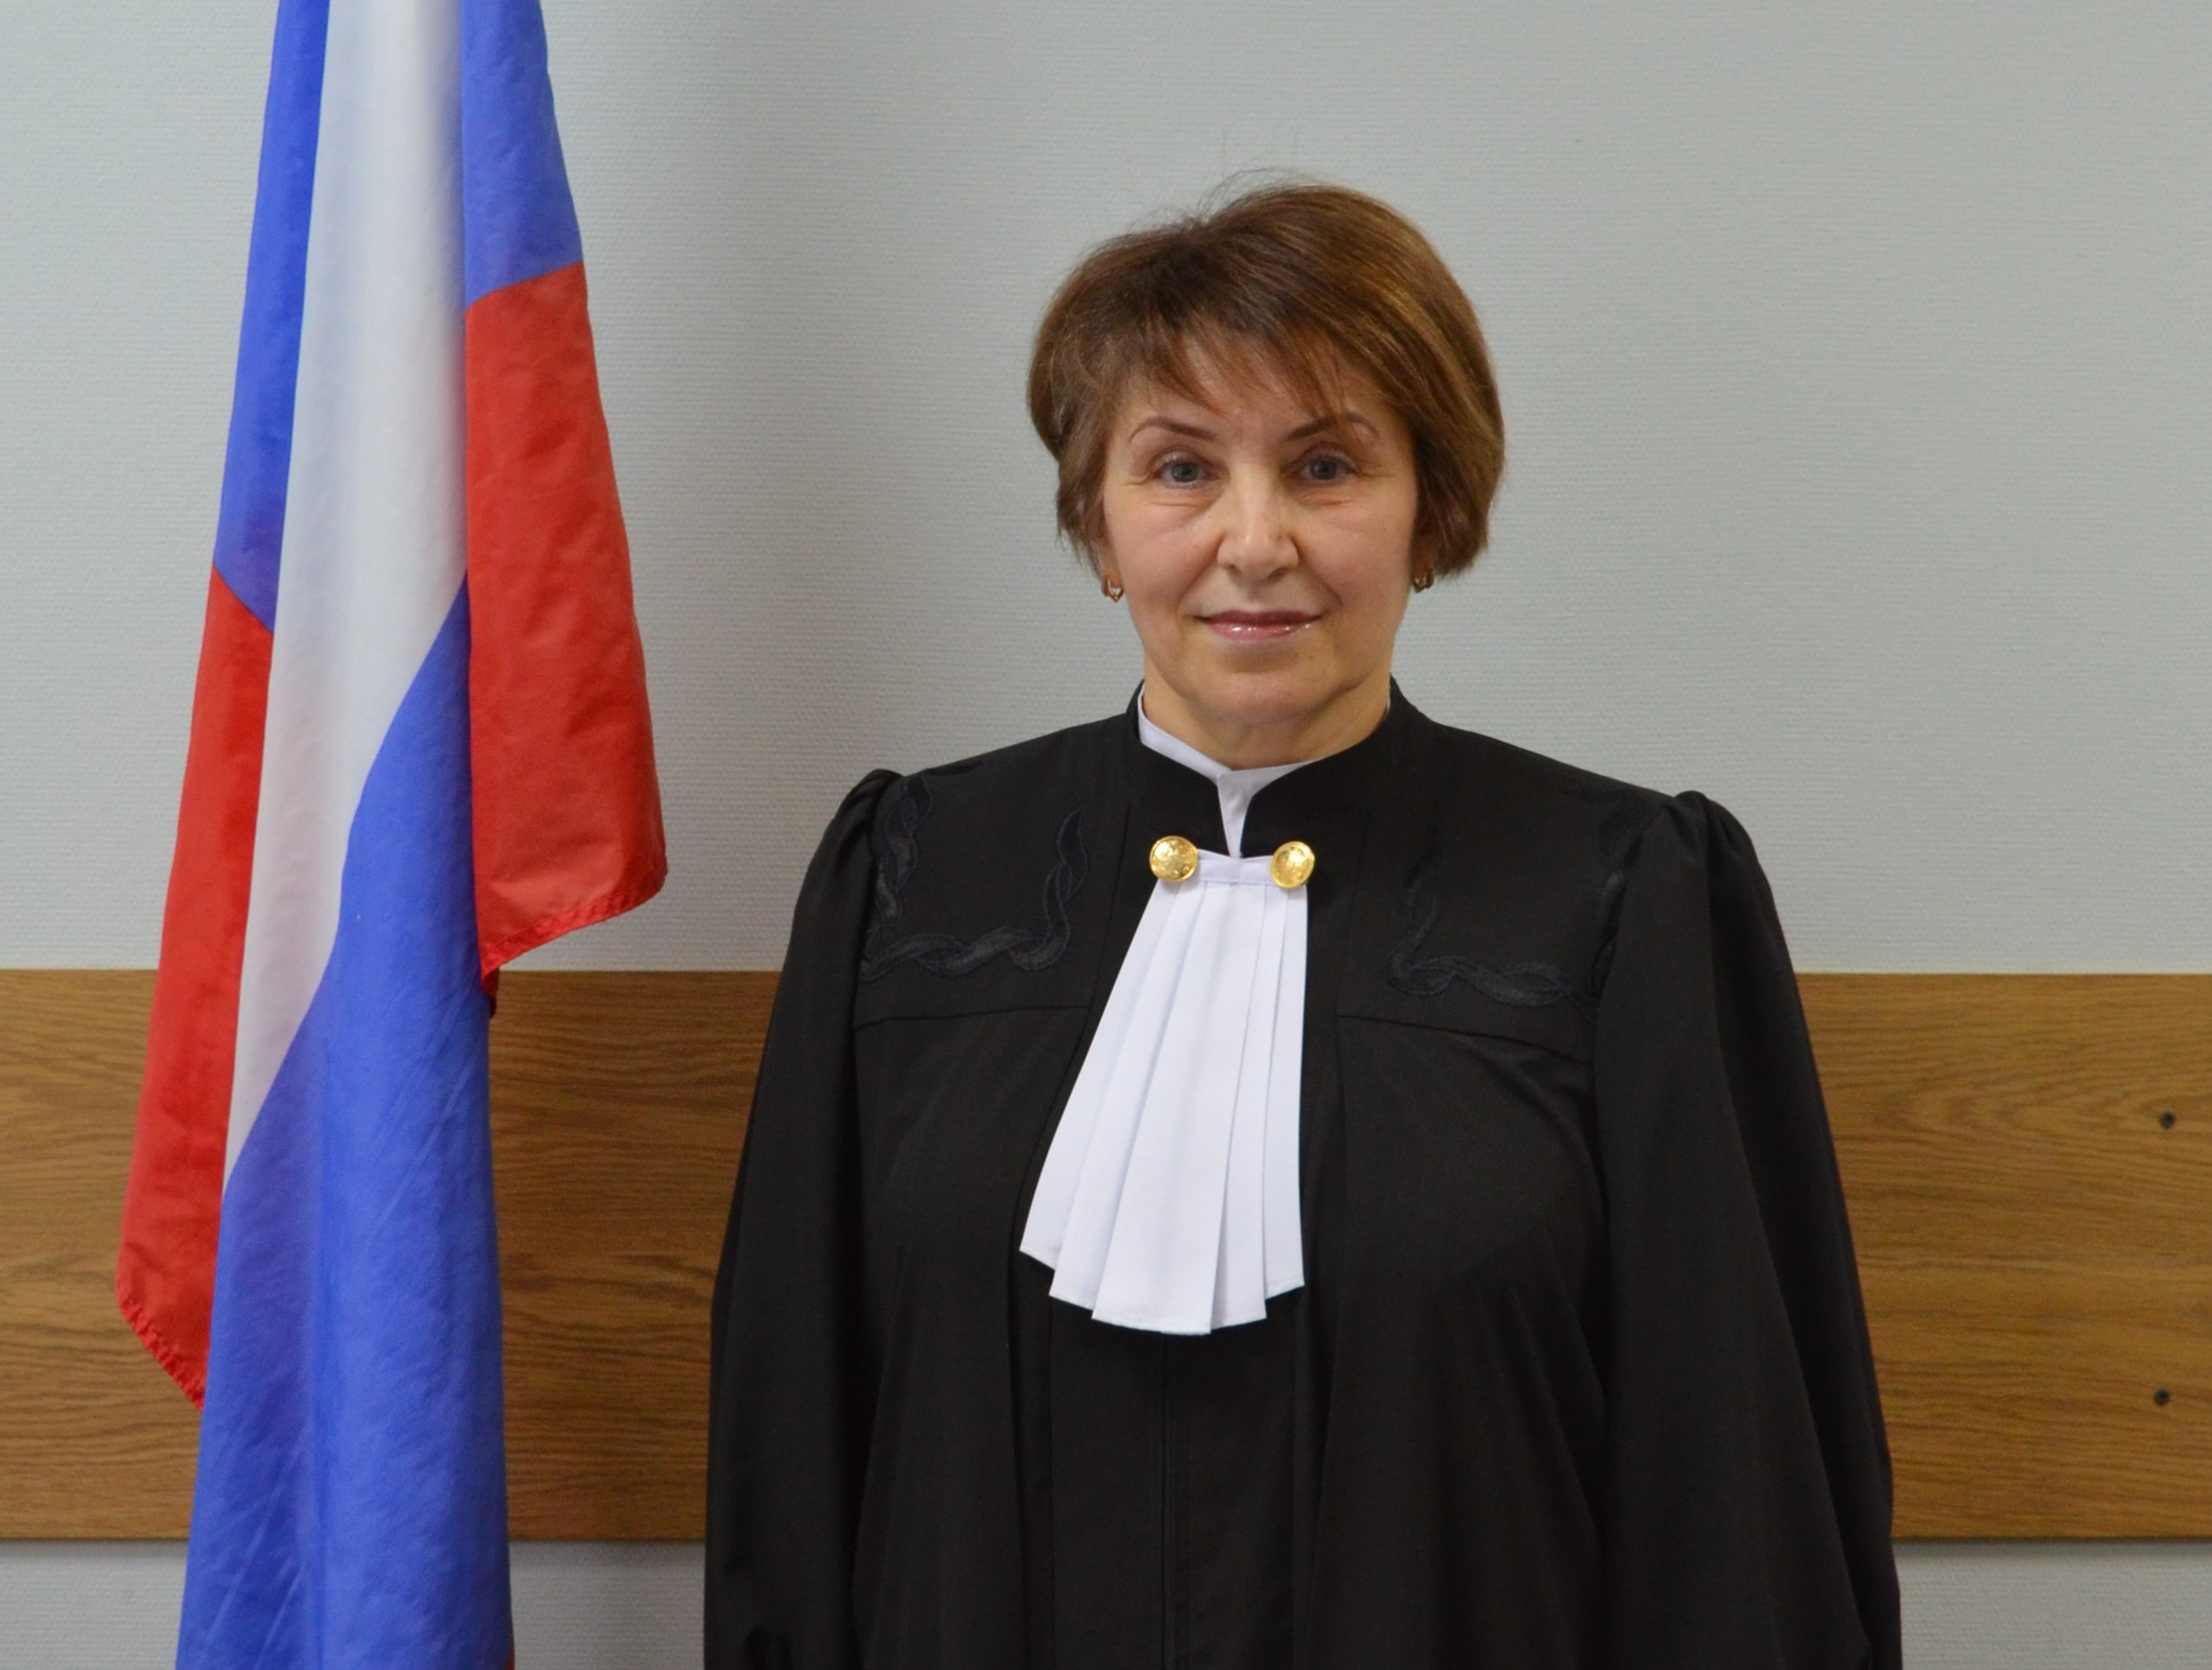 судья бубнова арбитражный суд города москвы